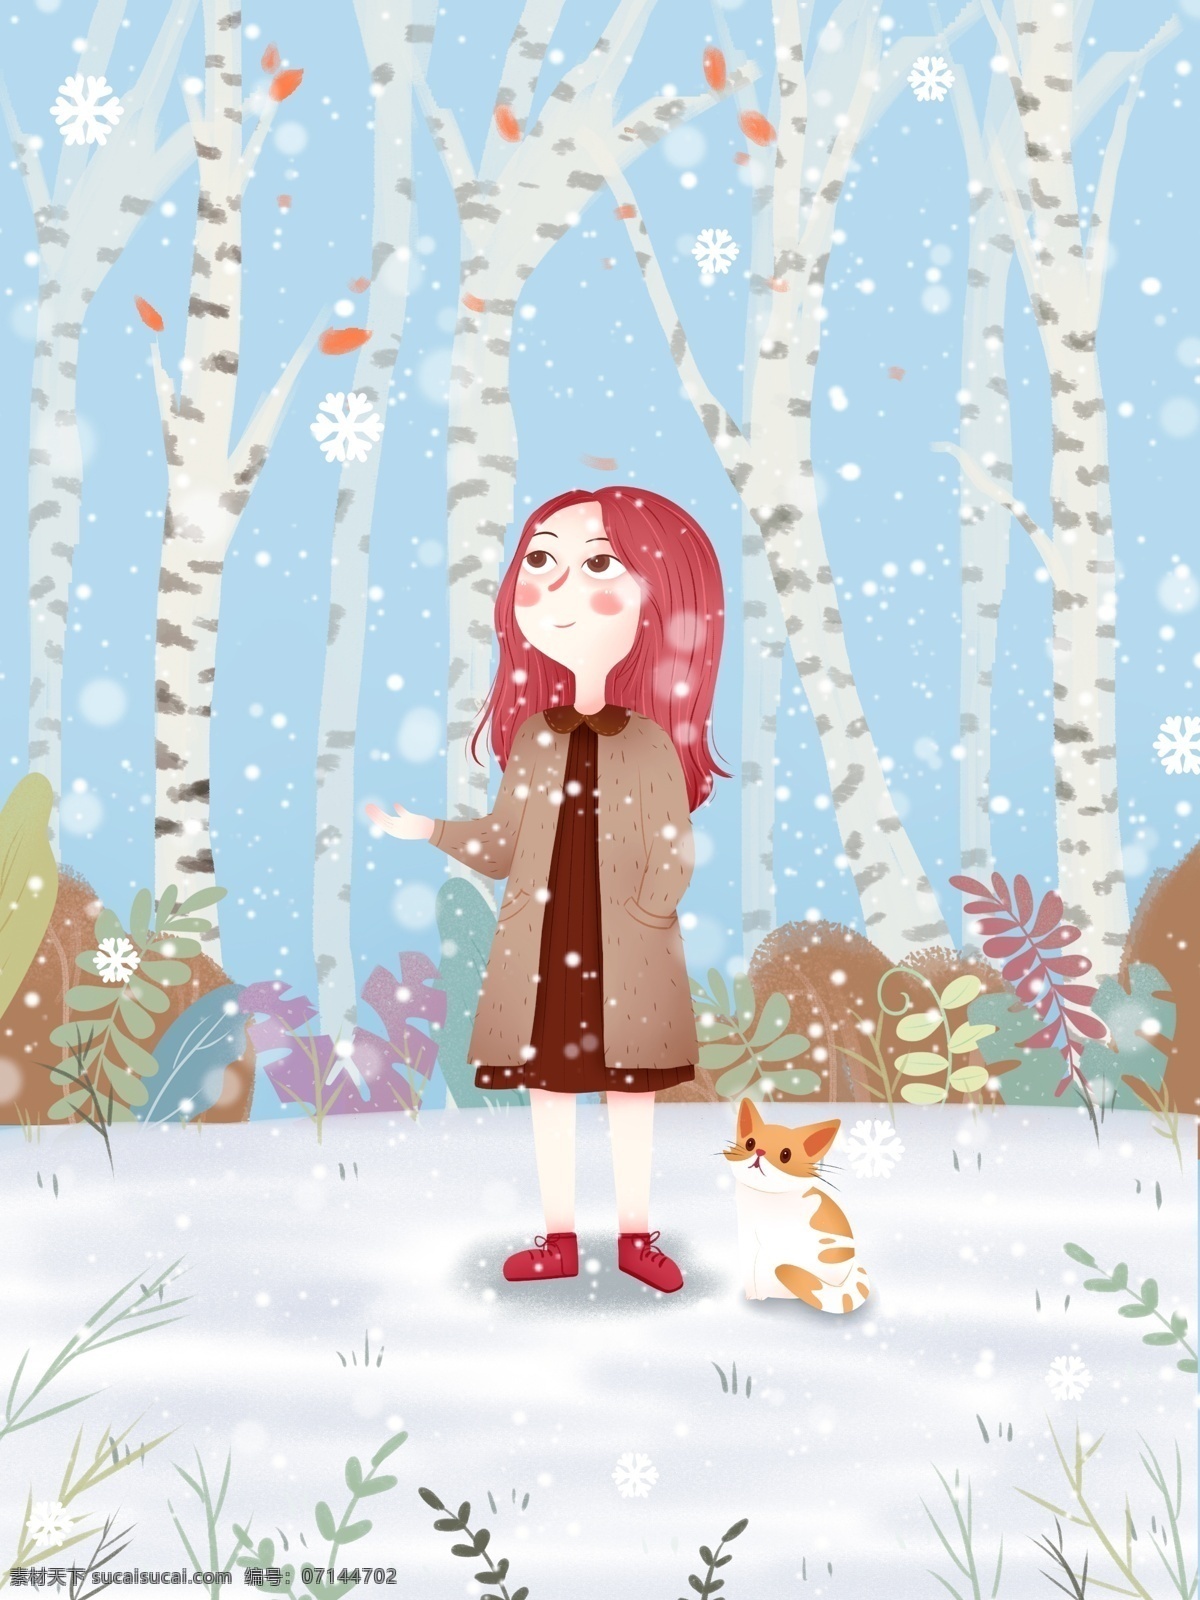 十二月 你好 小女孩 插画 雪花 雪地 清新 唯美 2月你好 下雪 喜欢 飘雪